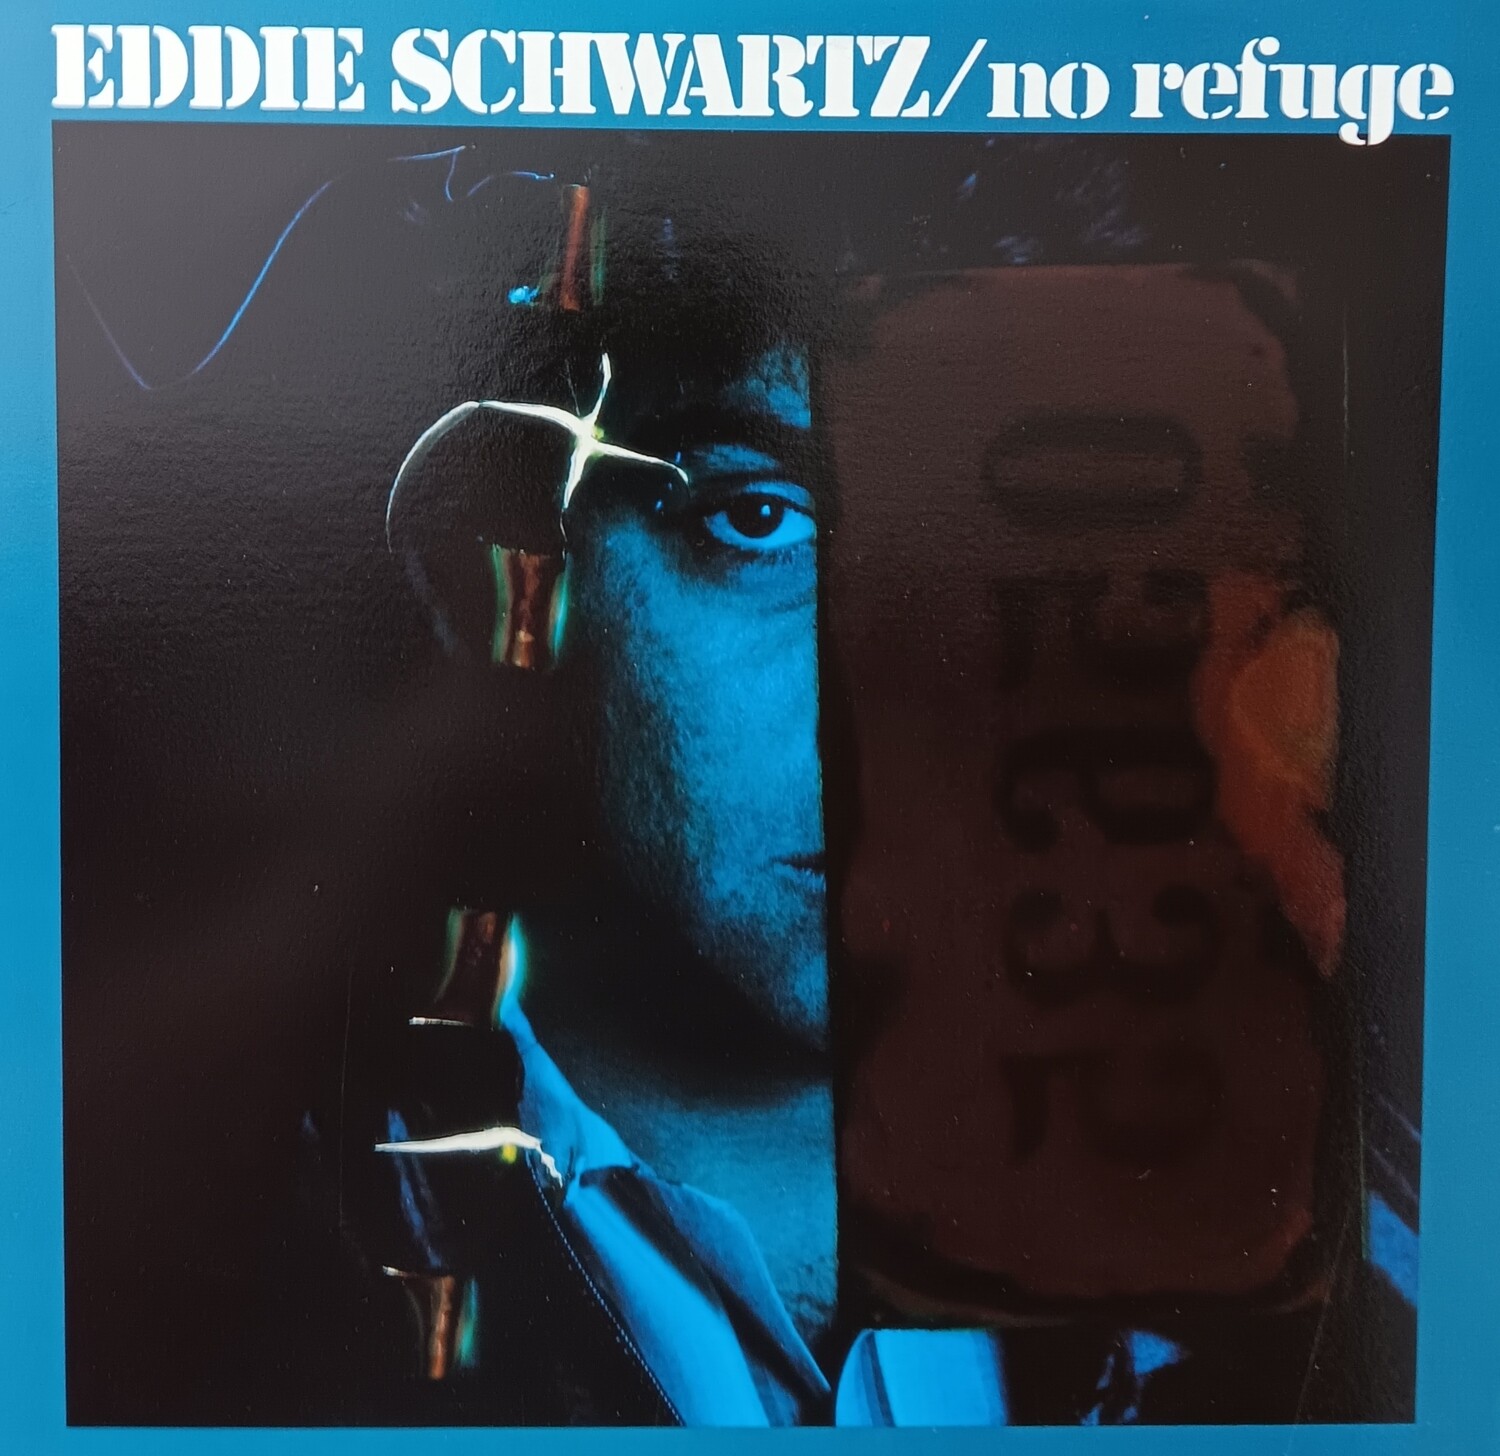 EDDIE SCHWARTZ - No refuge